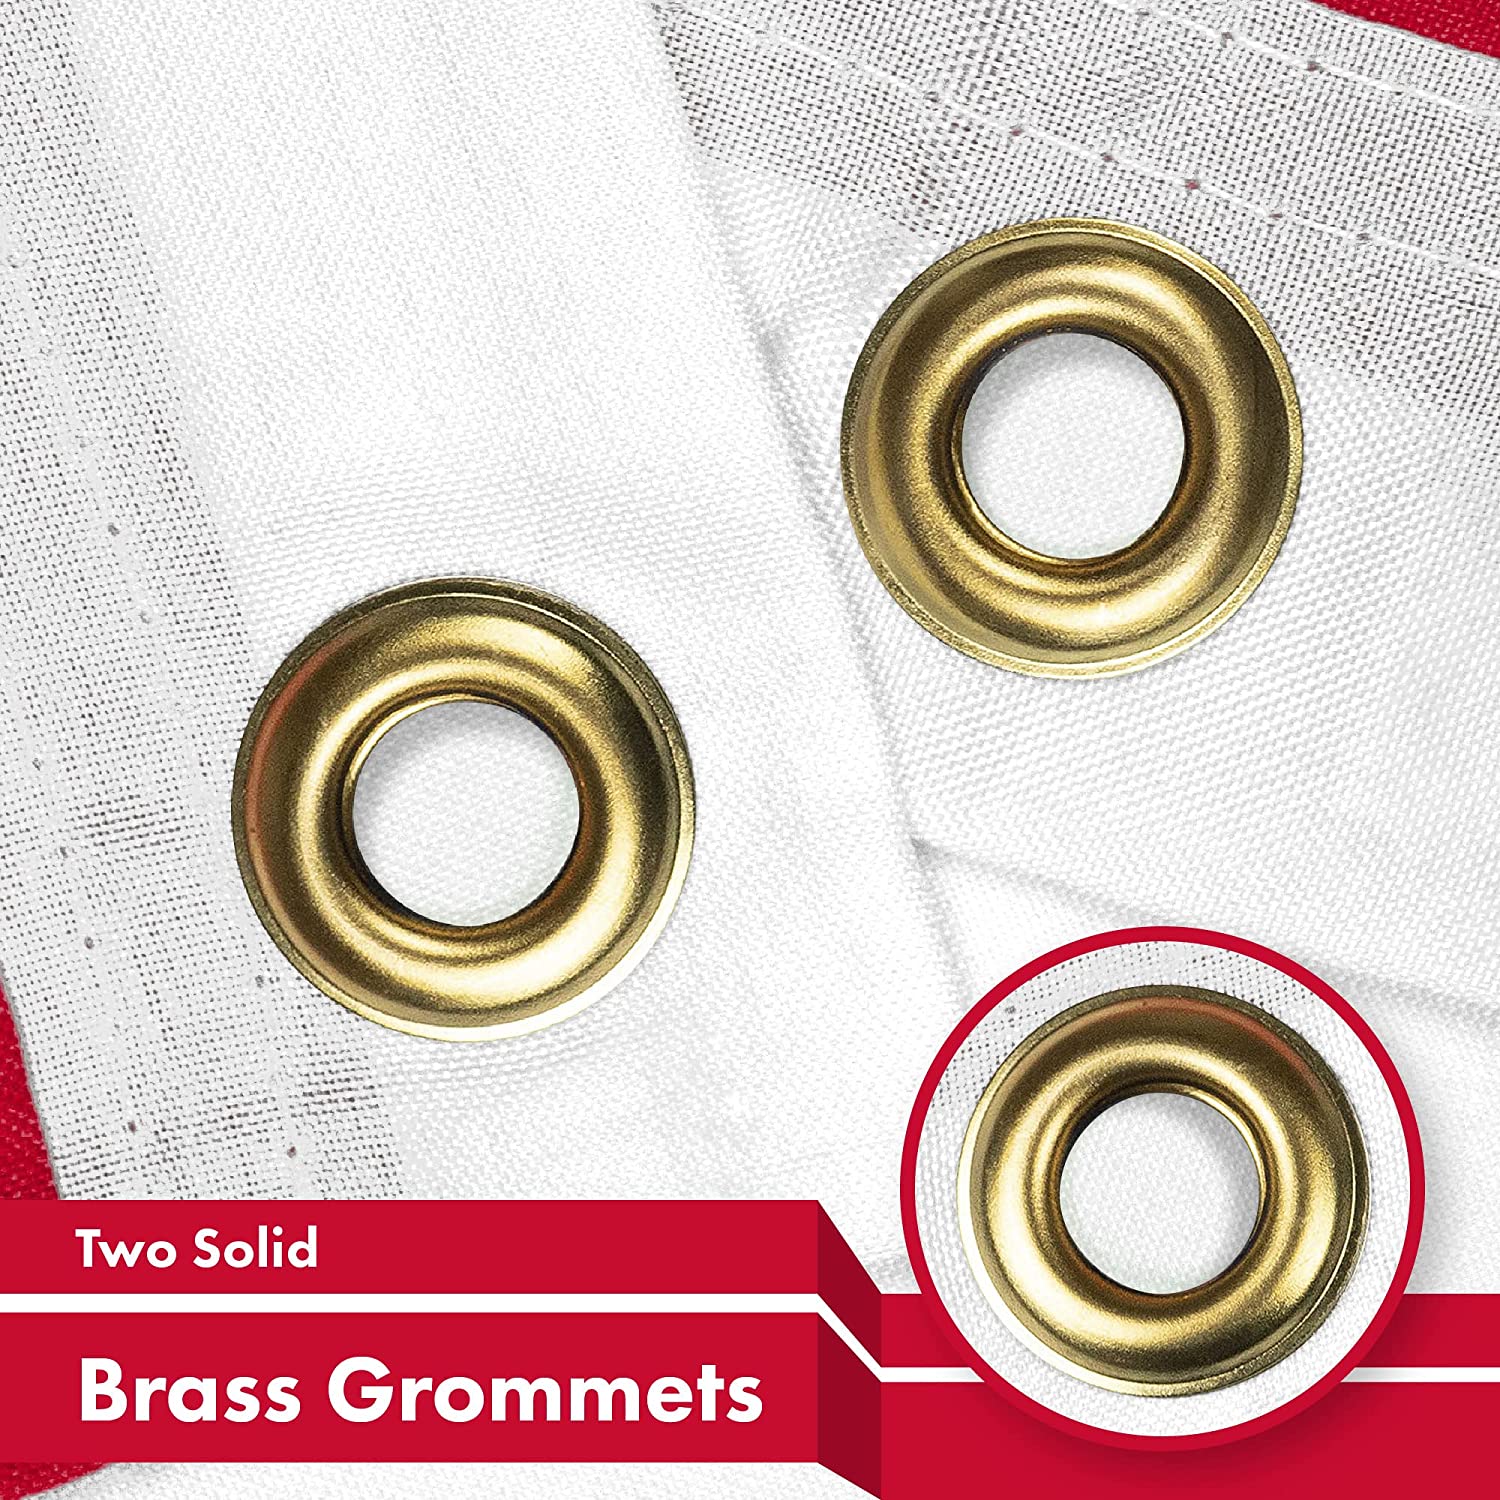 2 brass grommets on sewn Flag of Denmark